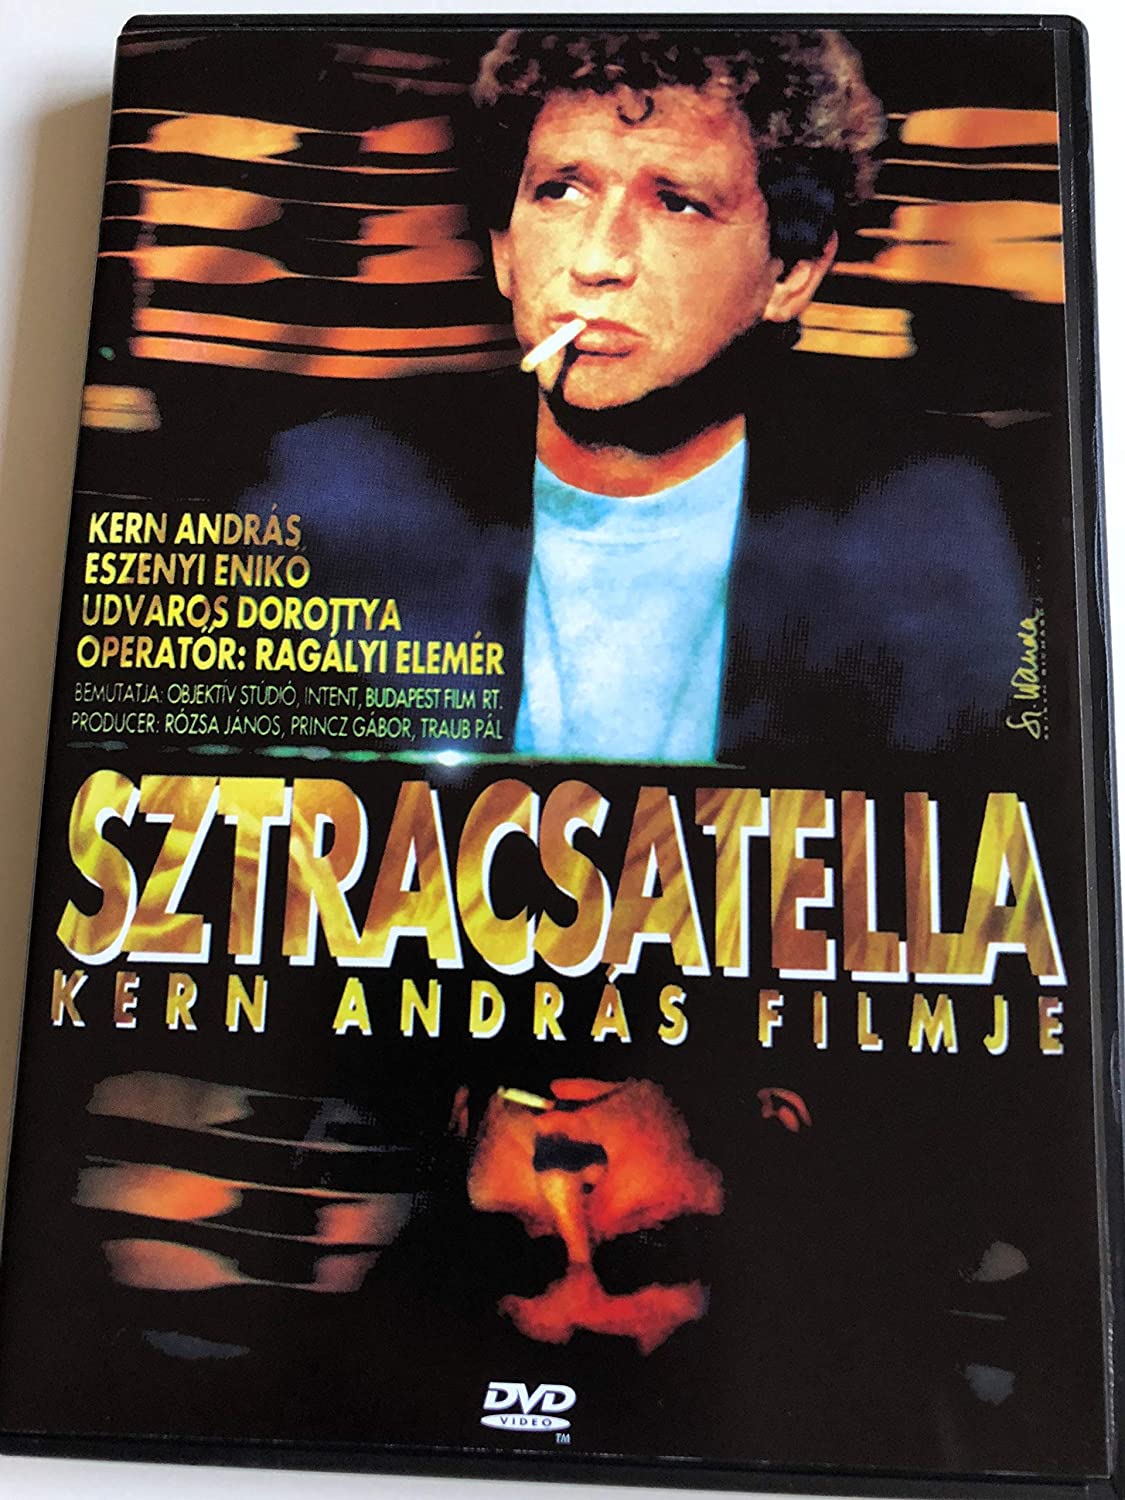 DVD von Sztracsatella